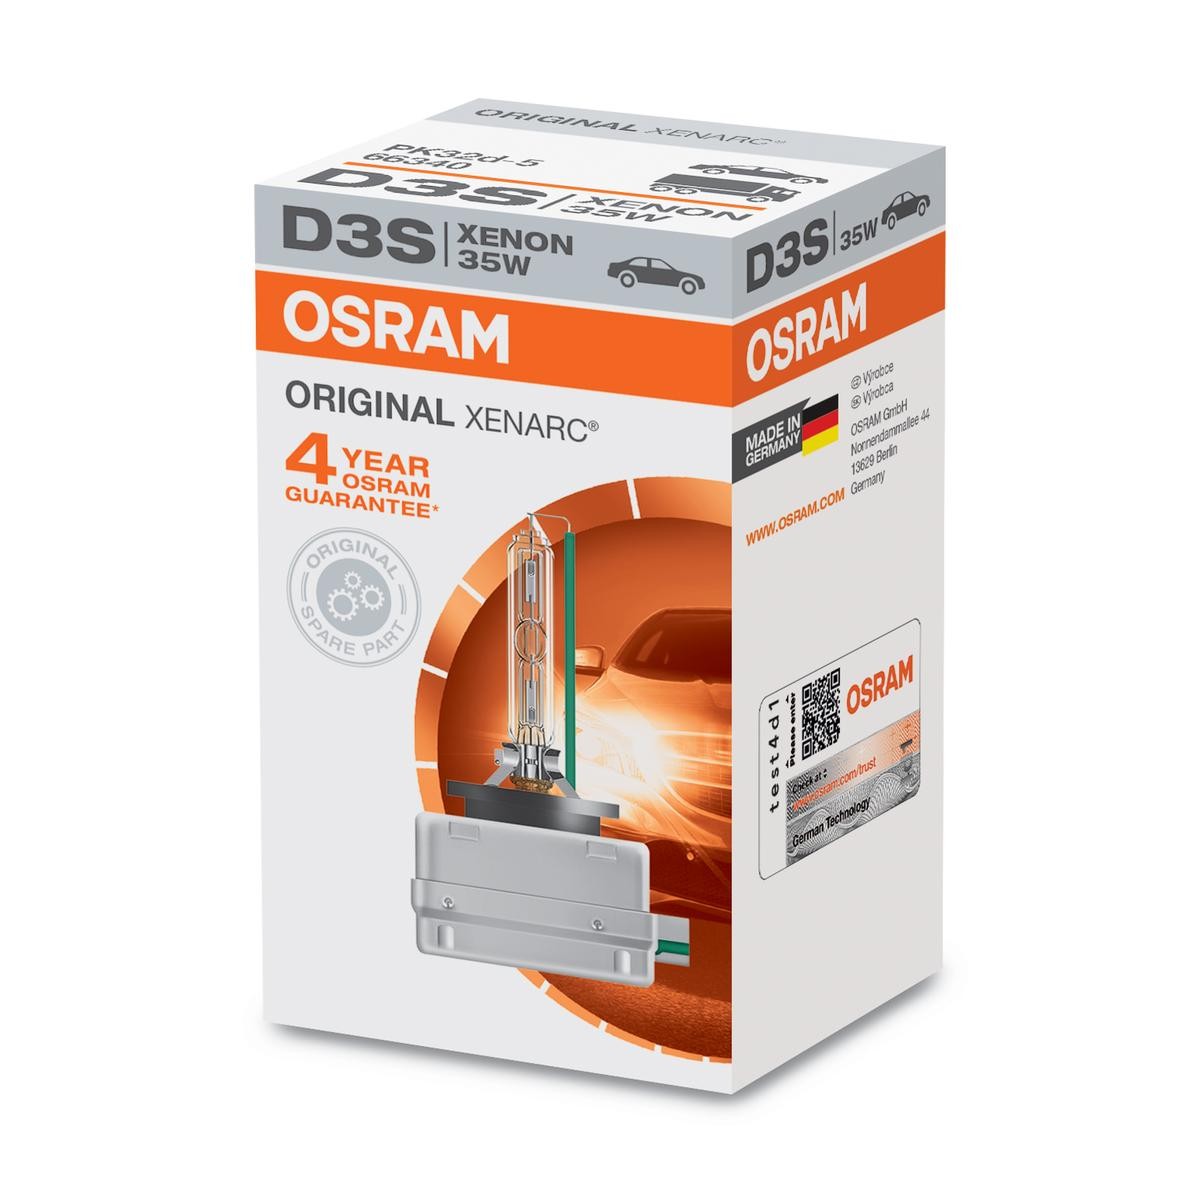 OSRAM XENARC ORIGINAL 66340 Lampadina abbagliante D3S (Lampada a scarico di gas) 42V 35W4100K Xeno